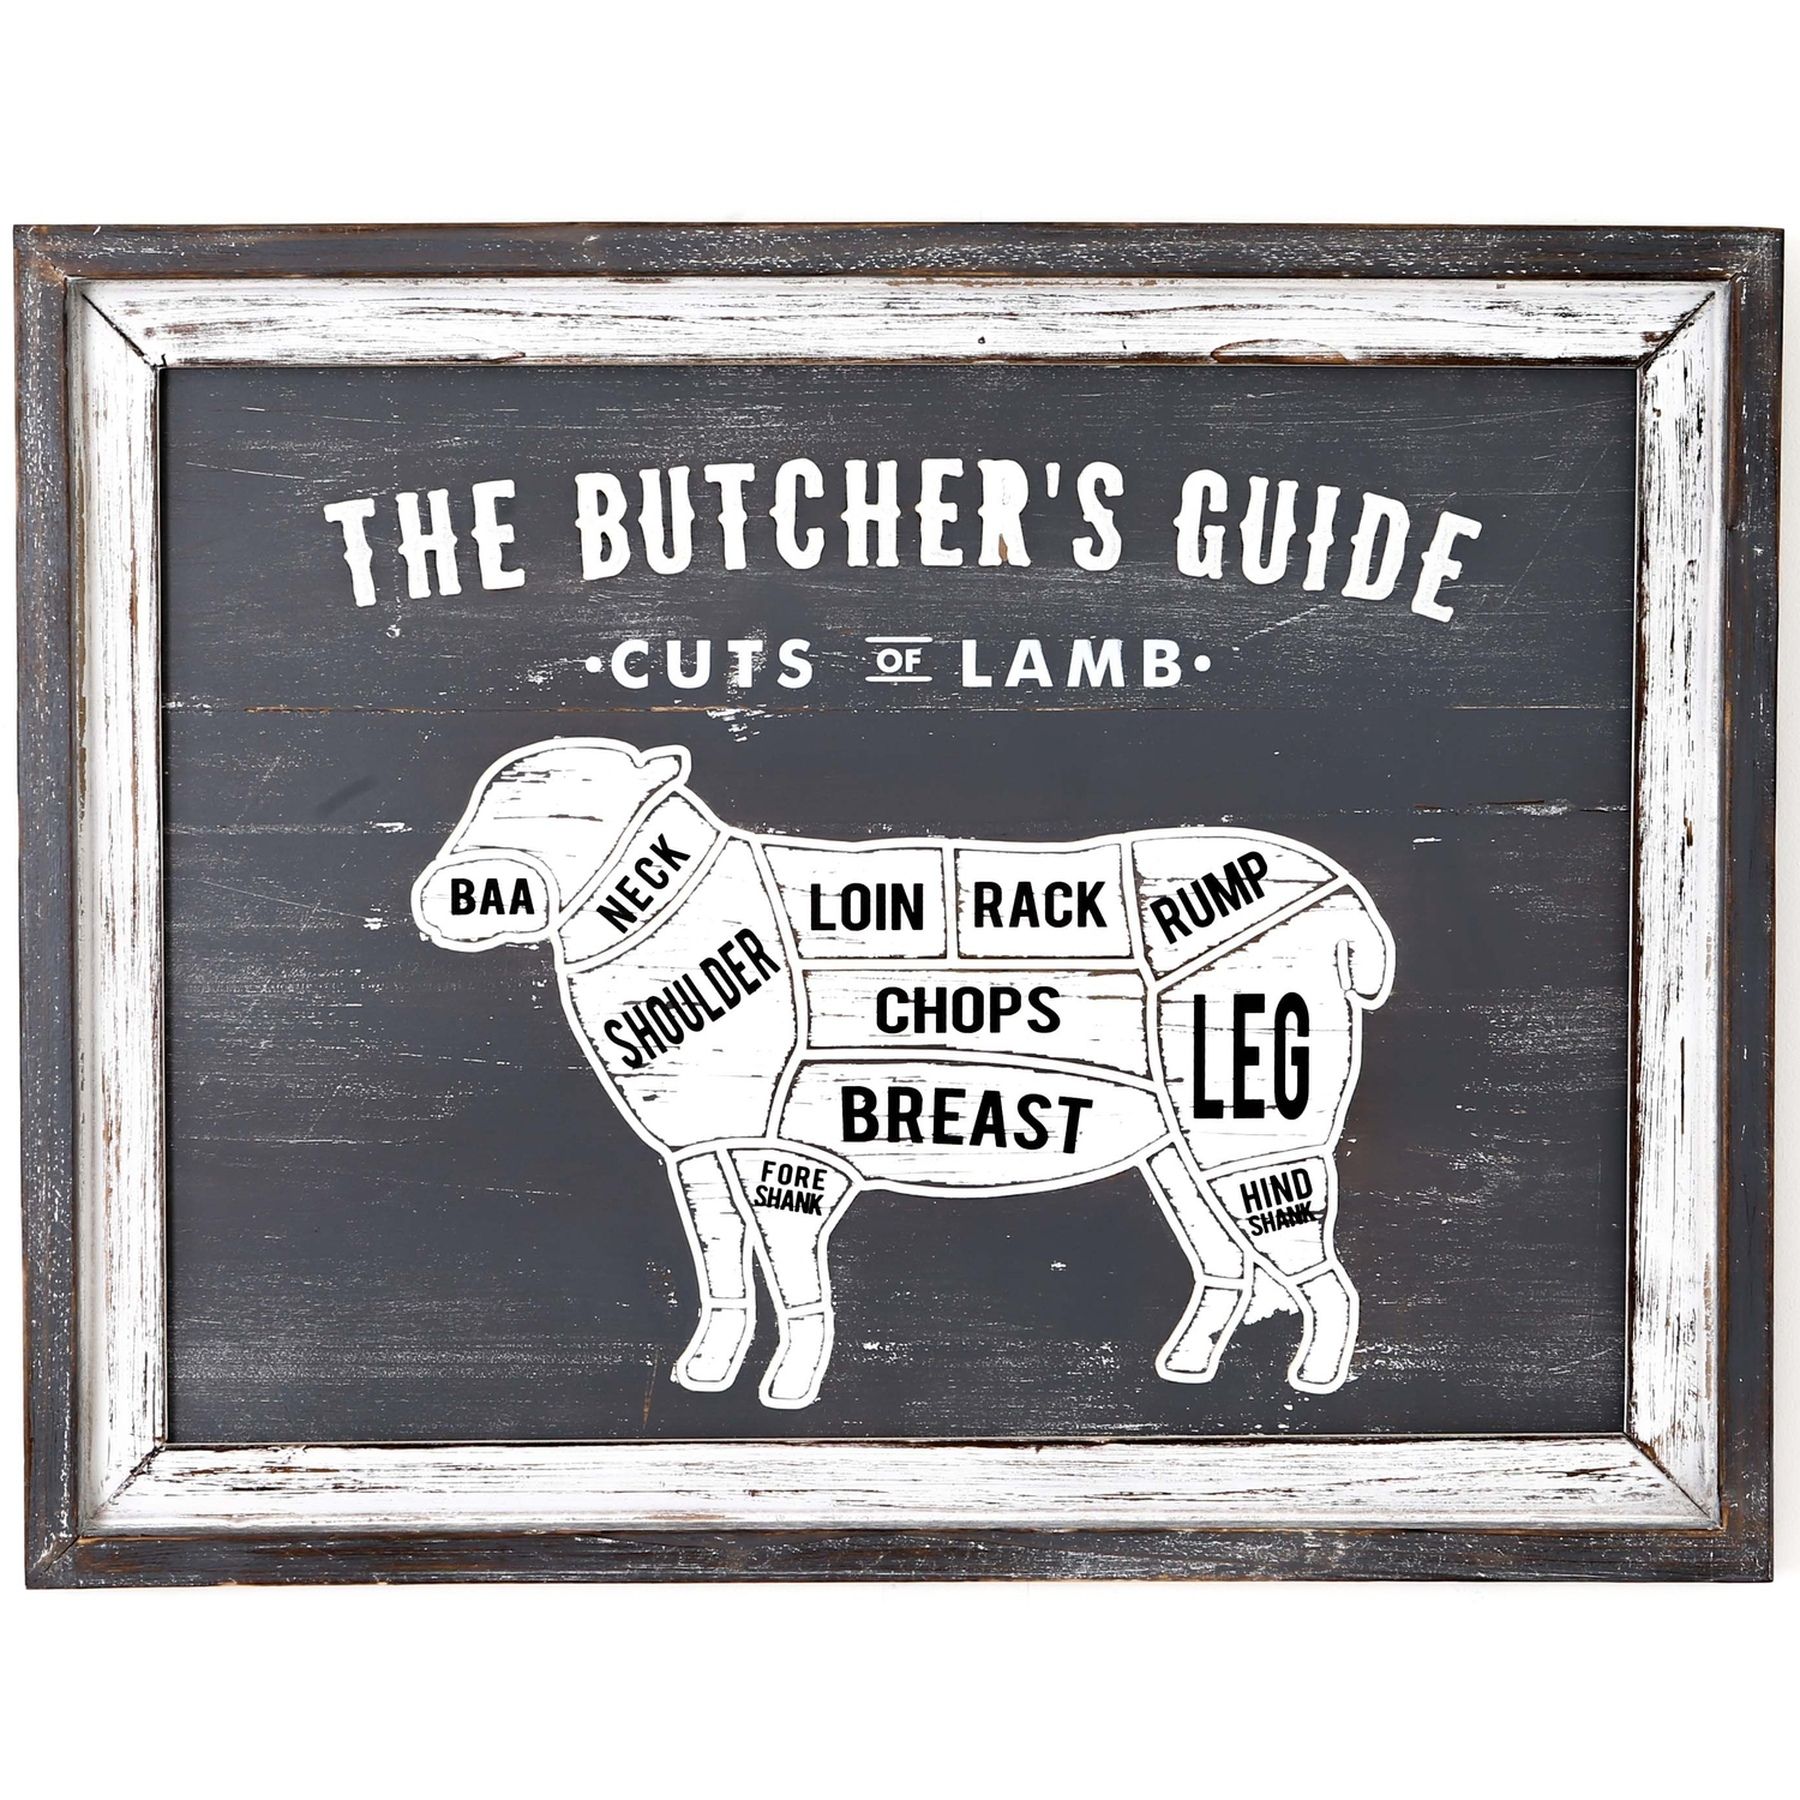 Butchers Cuts Lamb Wall Plaque - Image 1